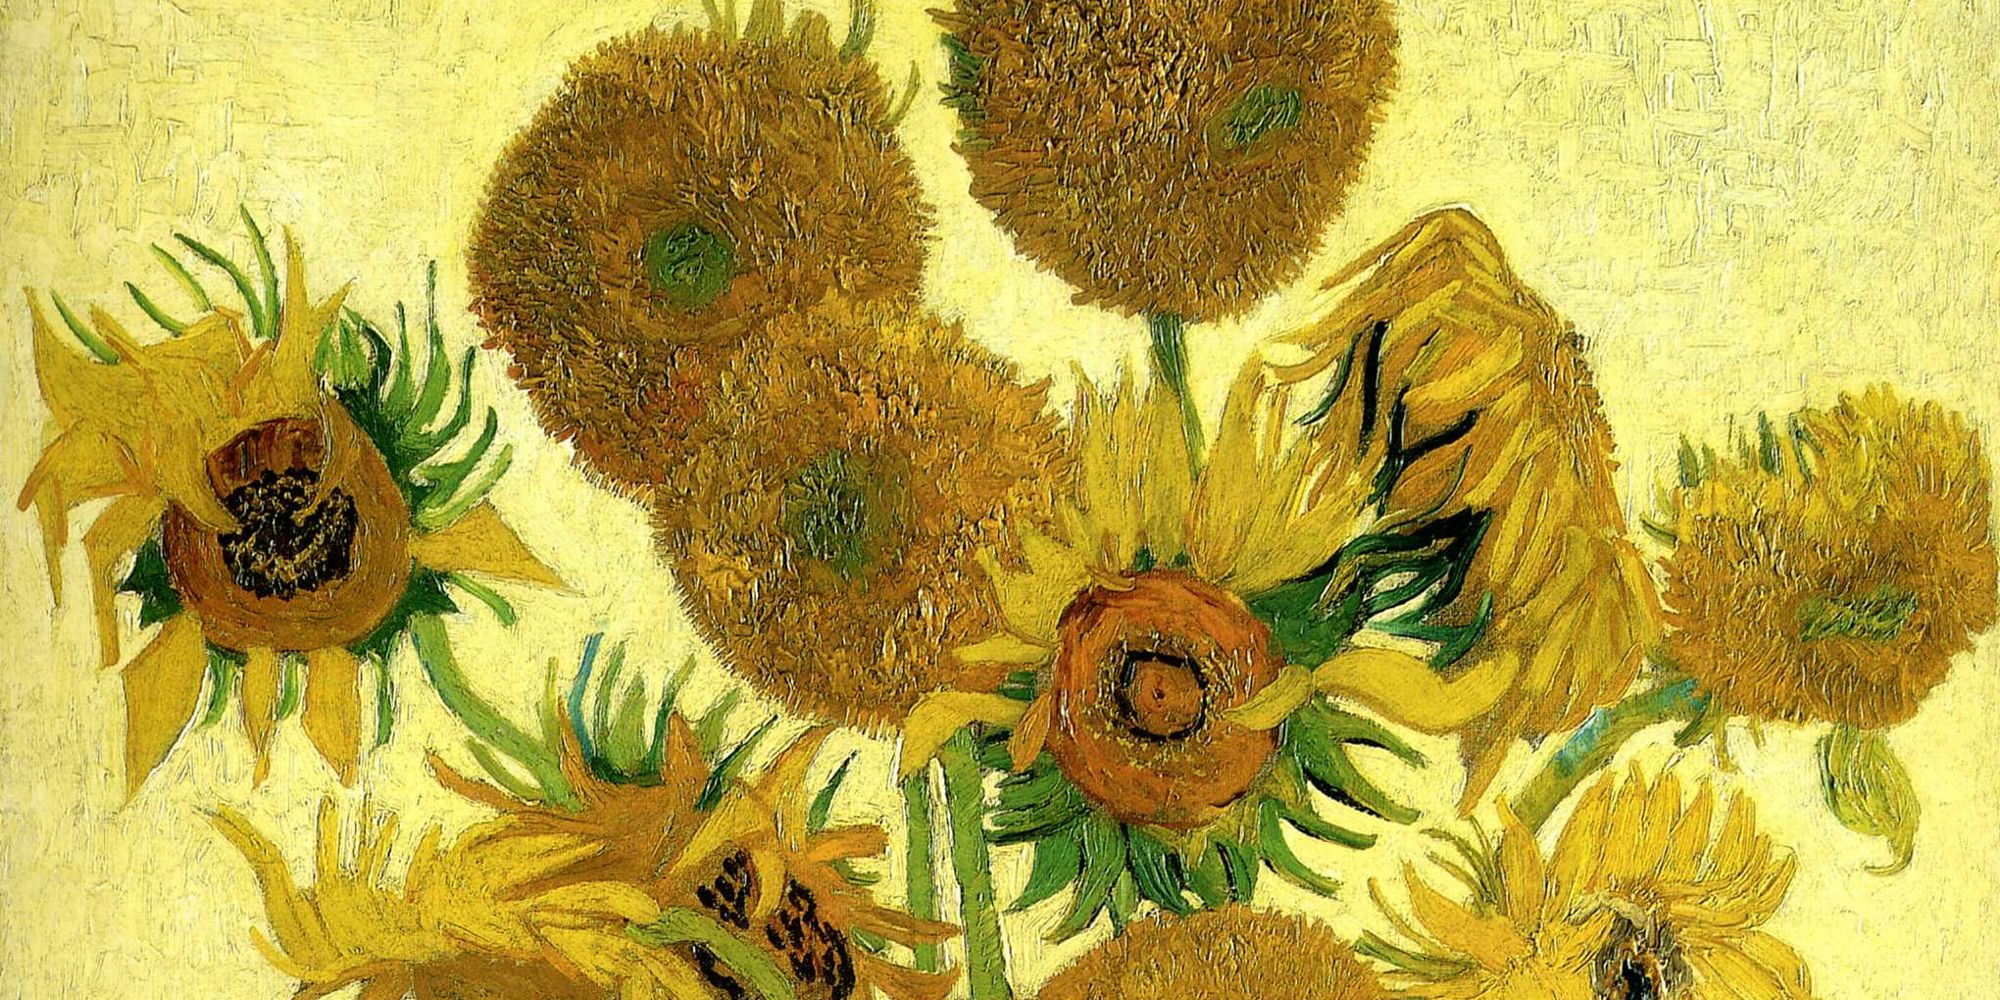 Vincent Van Gogh's Sunflowers